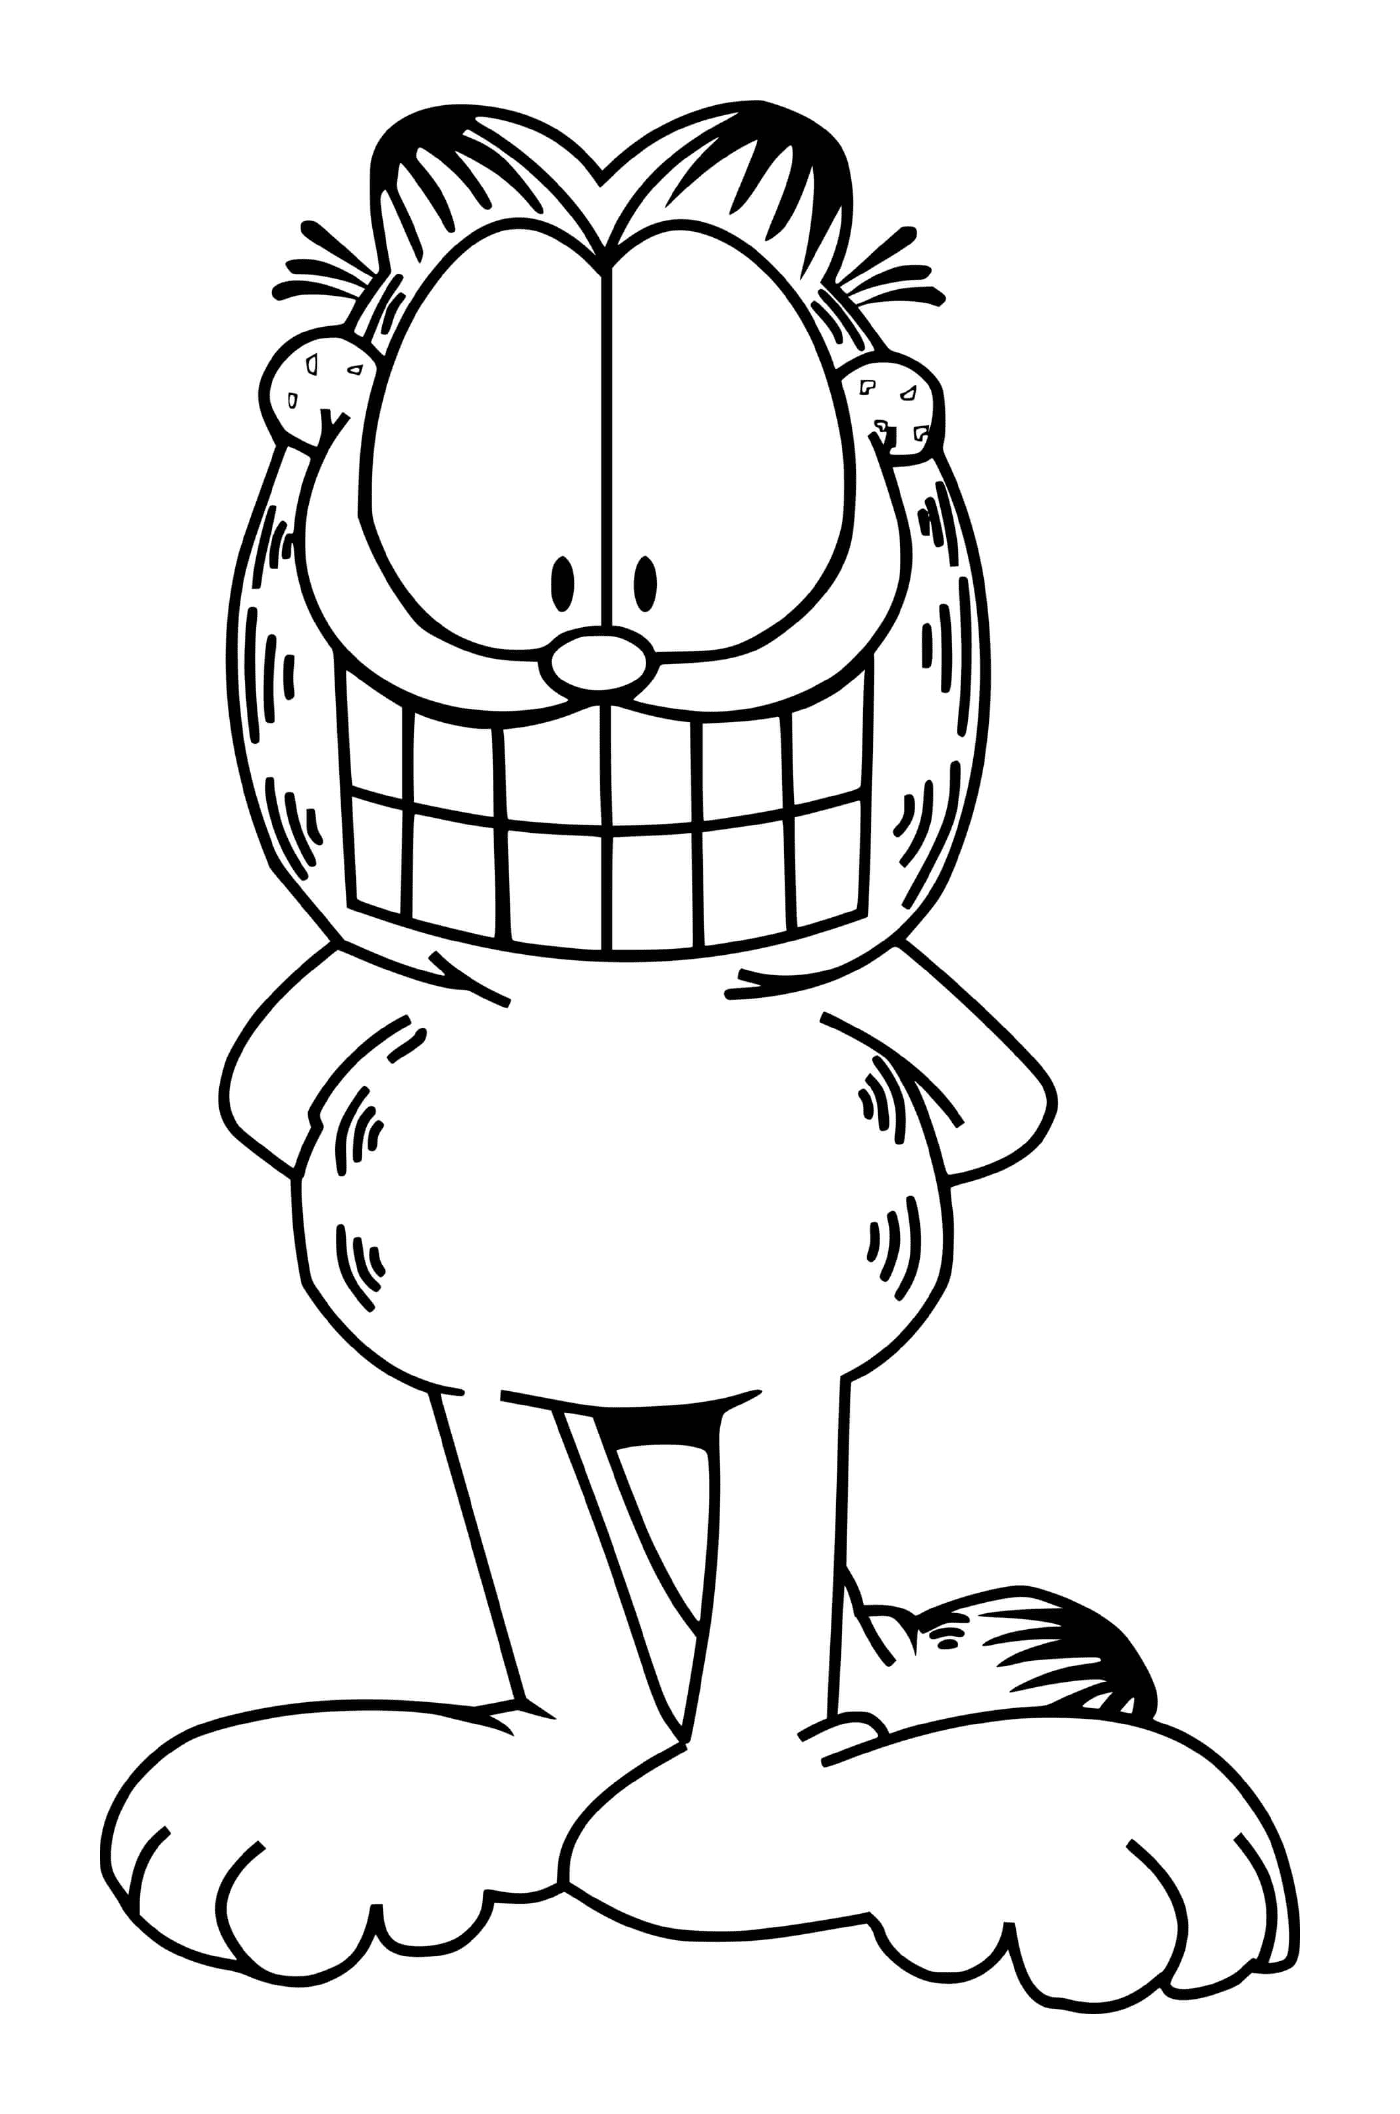  Garfield mostra un grande sorriso 